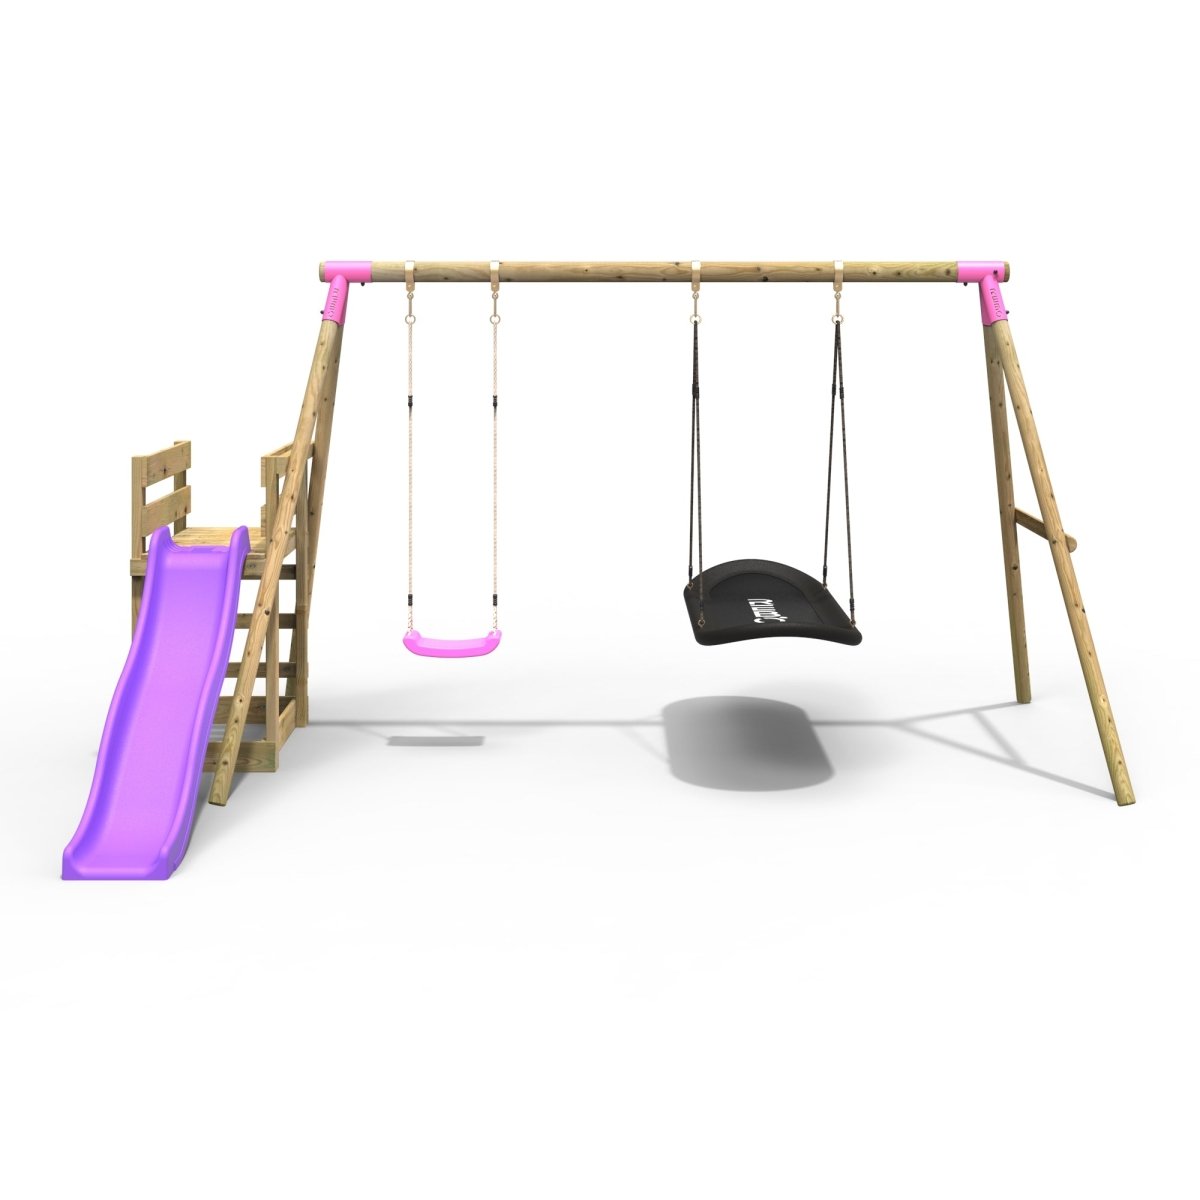 Rebo Wooden Swing Set plus Deck & Slide - Meteorite Pink